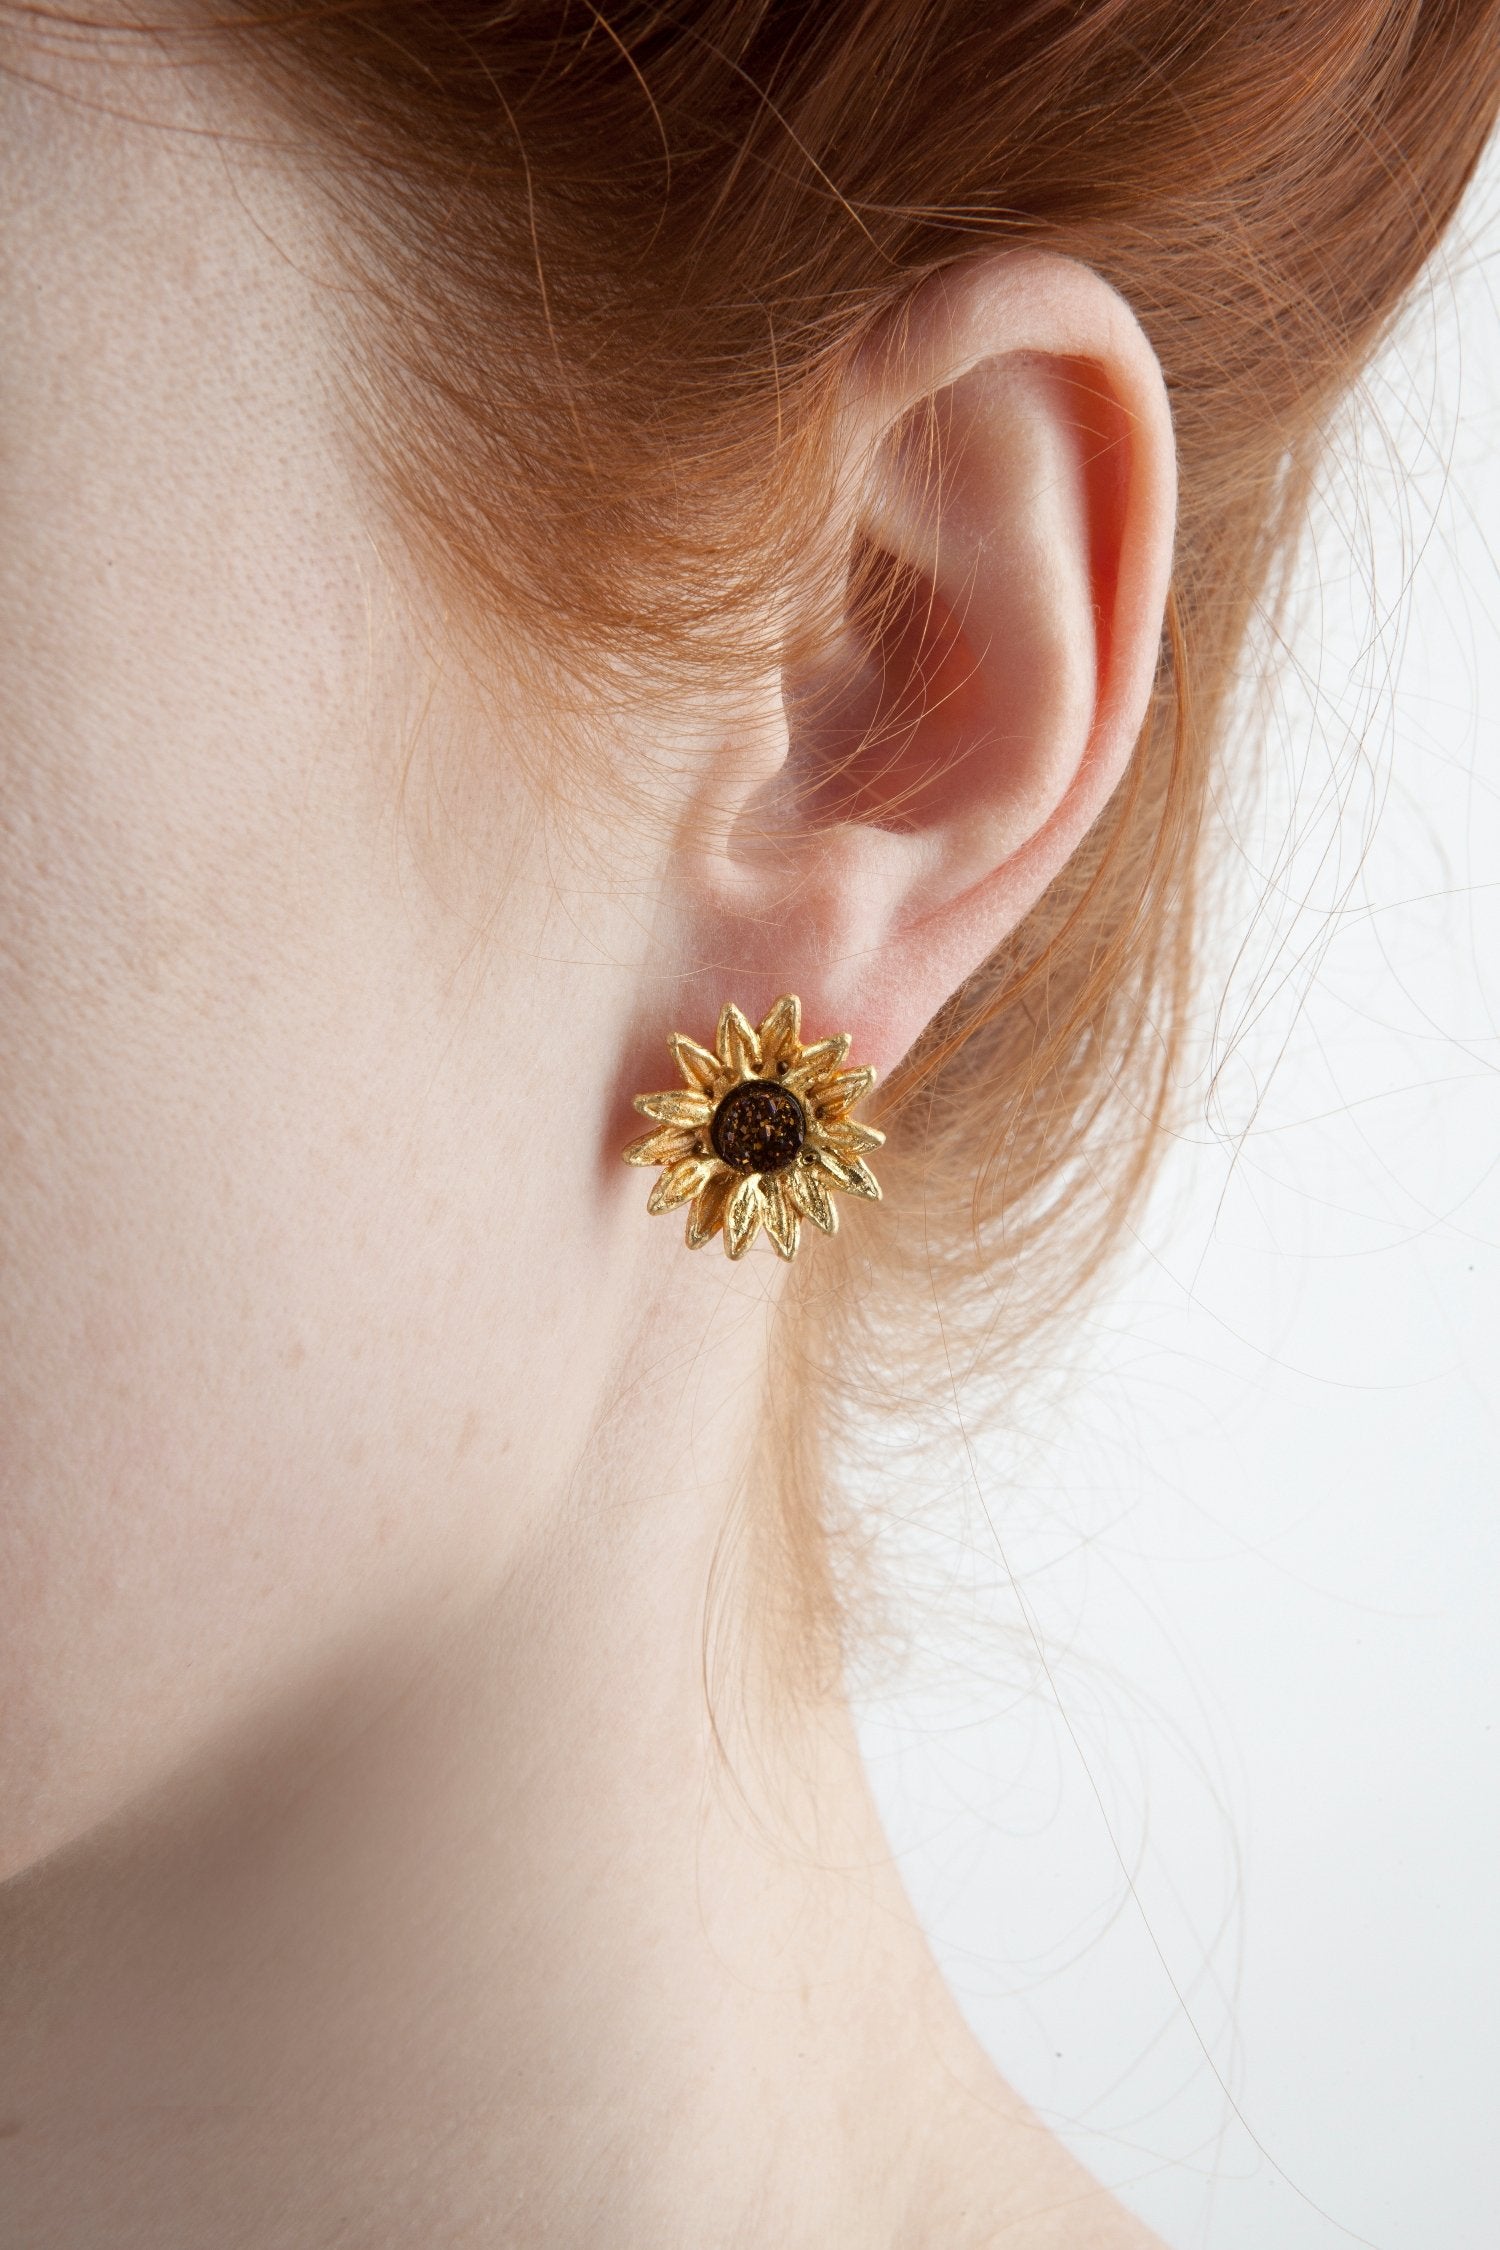 Sunflower Earrings - Petite Post